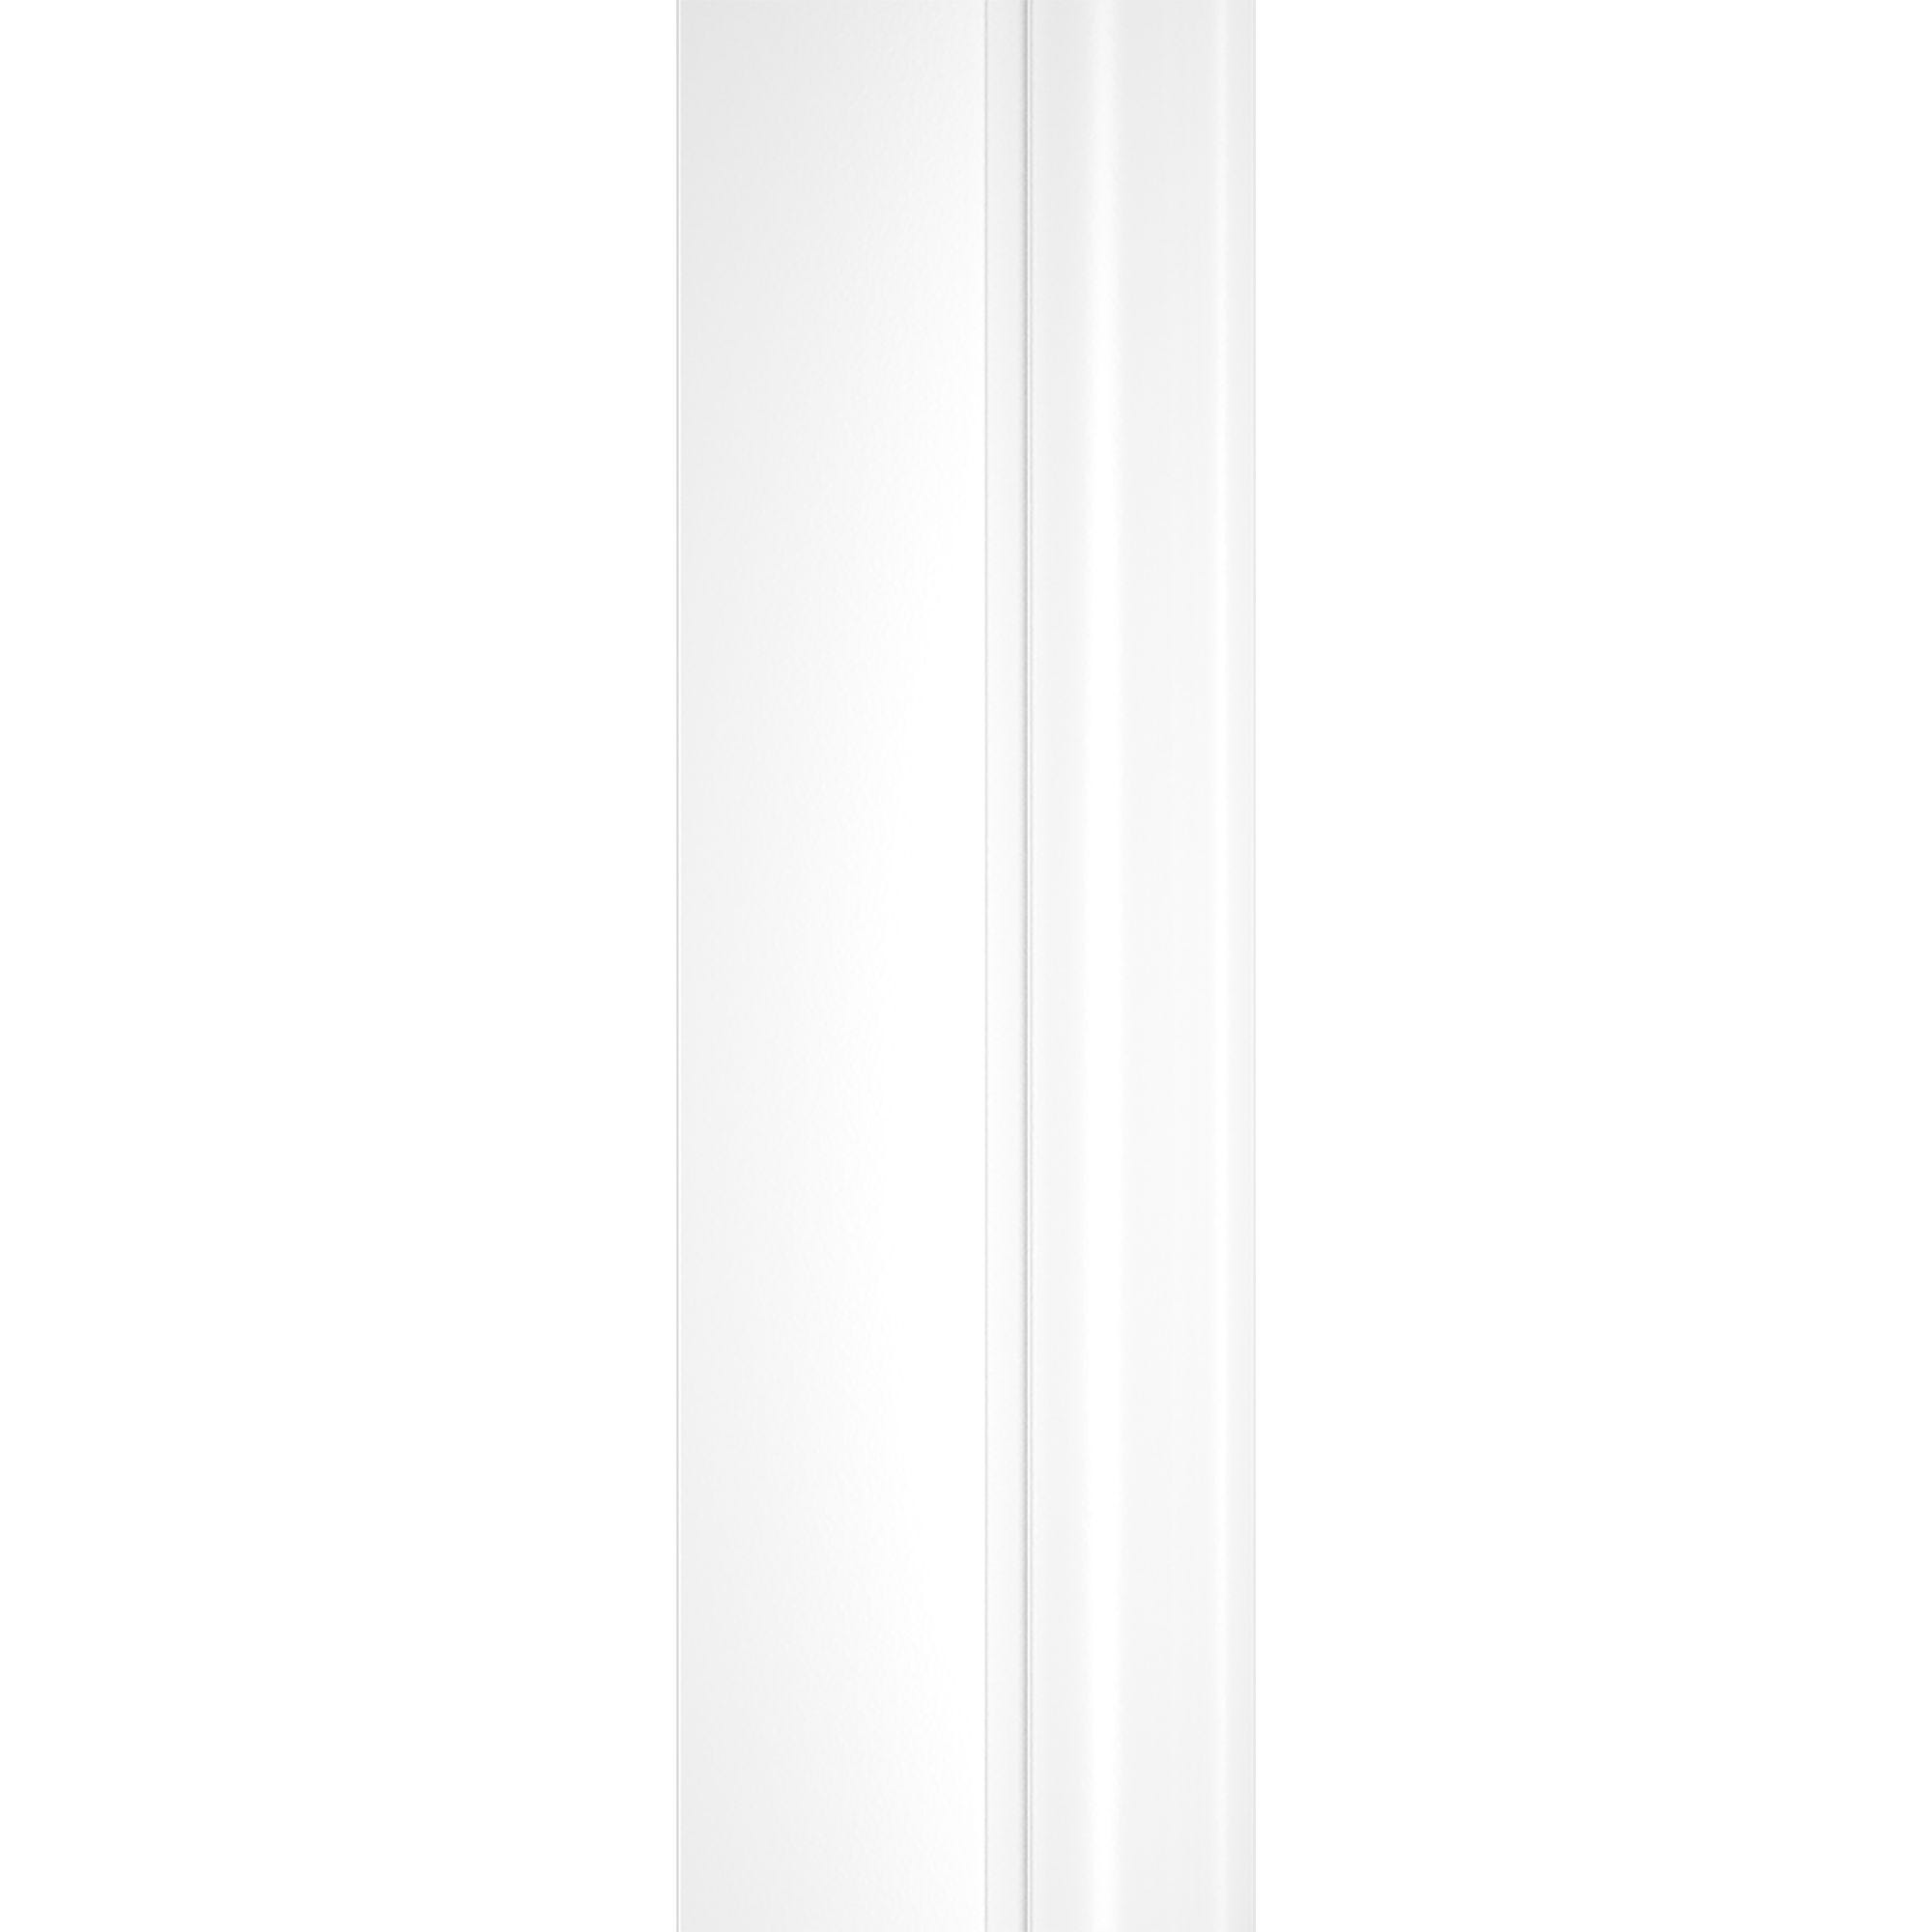 Schulte paroi de douche acces d'angle arrondi, 90 x 90 x 190 cm avec portes de douche coulissantes, 5 mm, verre sablé au milieu, profilé blanc, Sunny 2